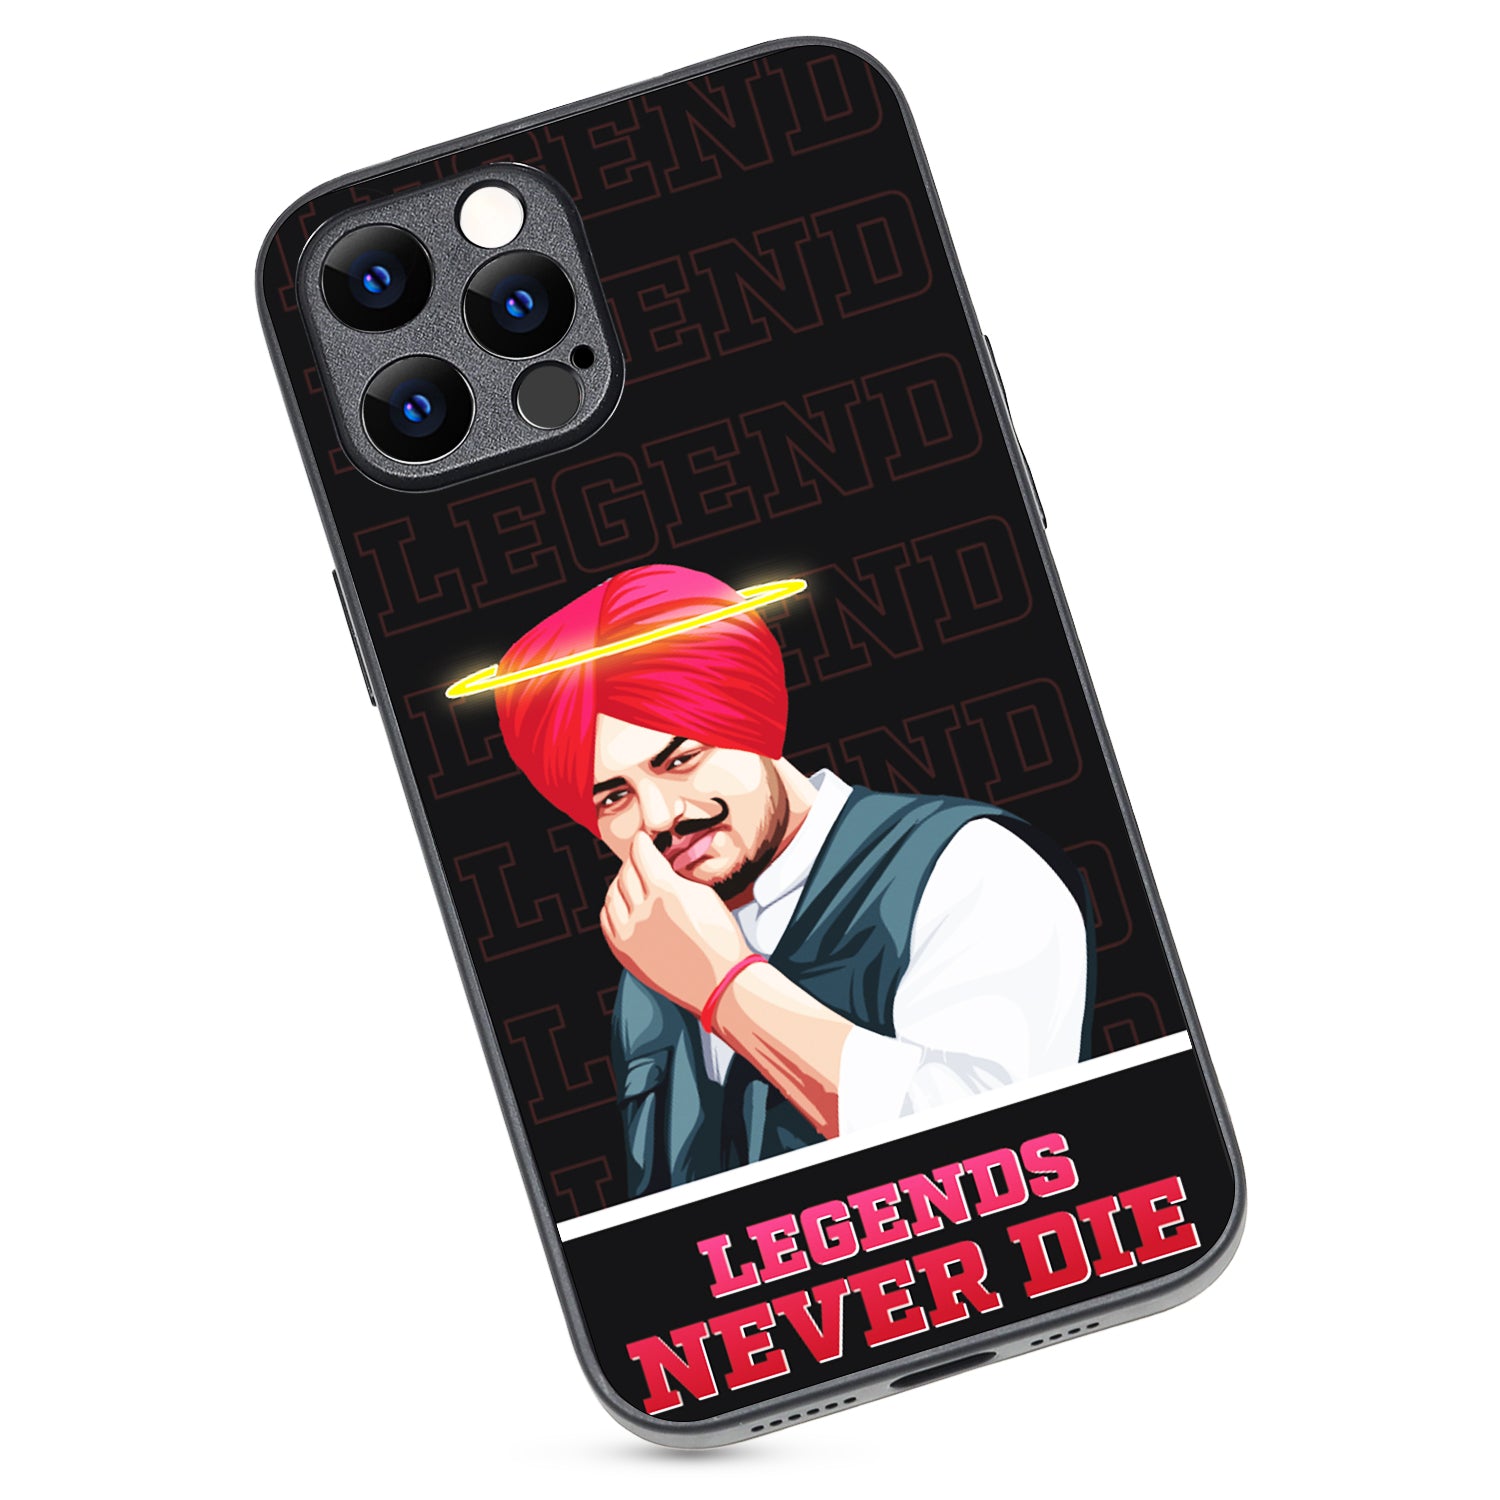 Legend Never Die Black Sidhu Moosewala iPhone 12 Pro Max Case